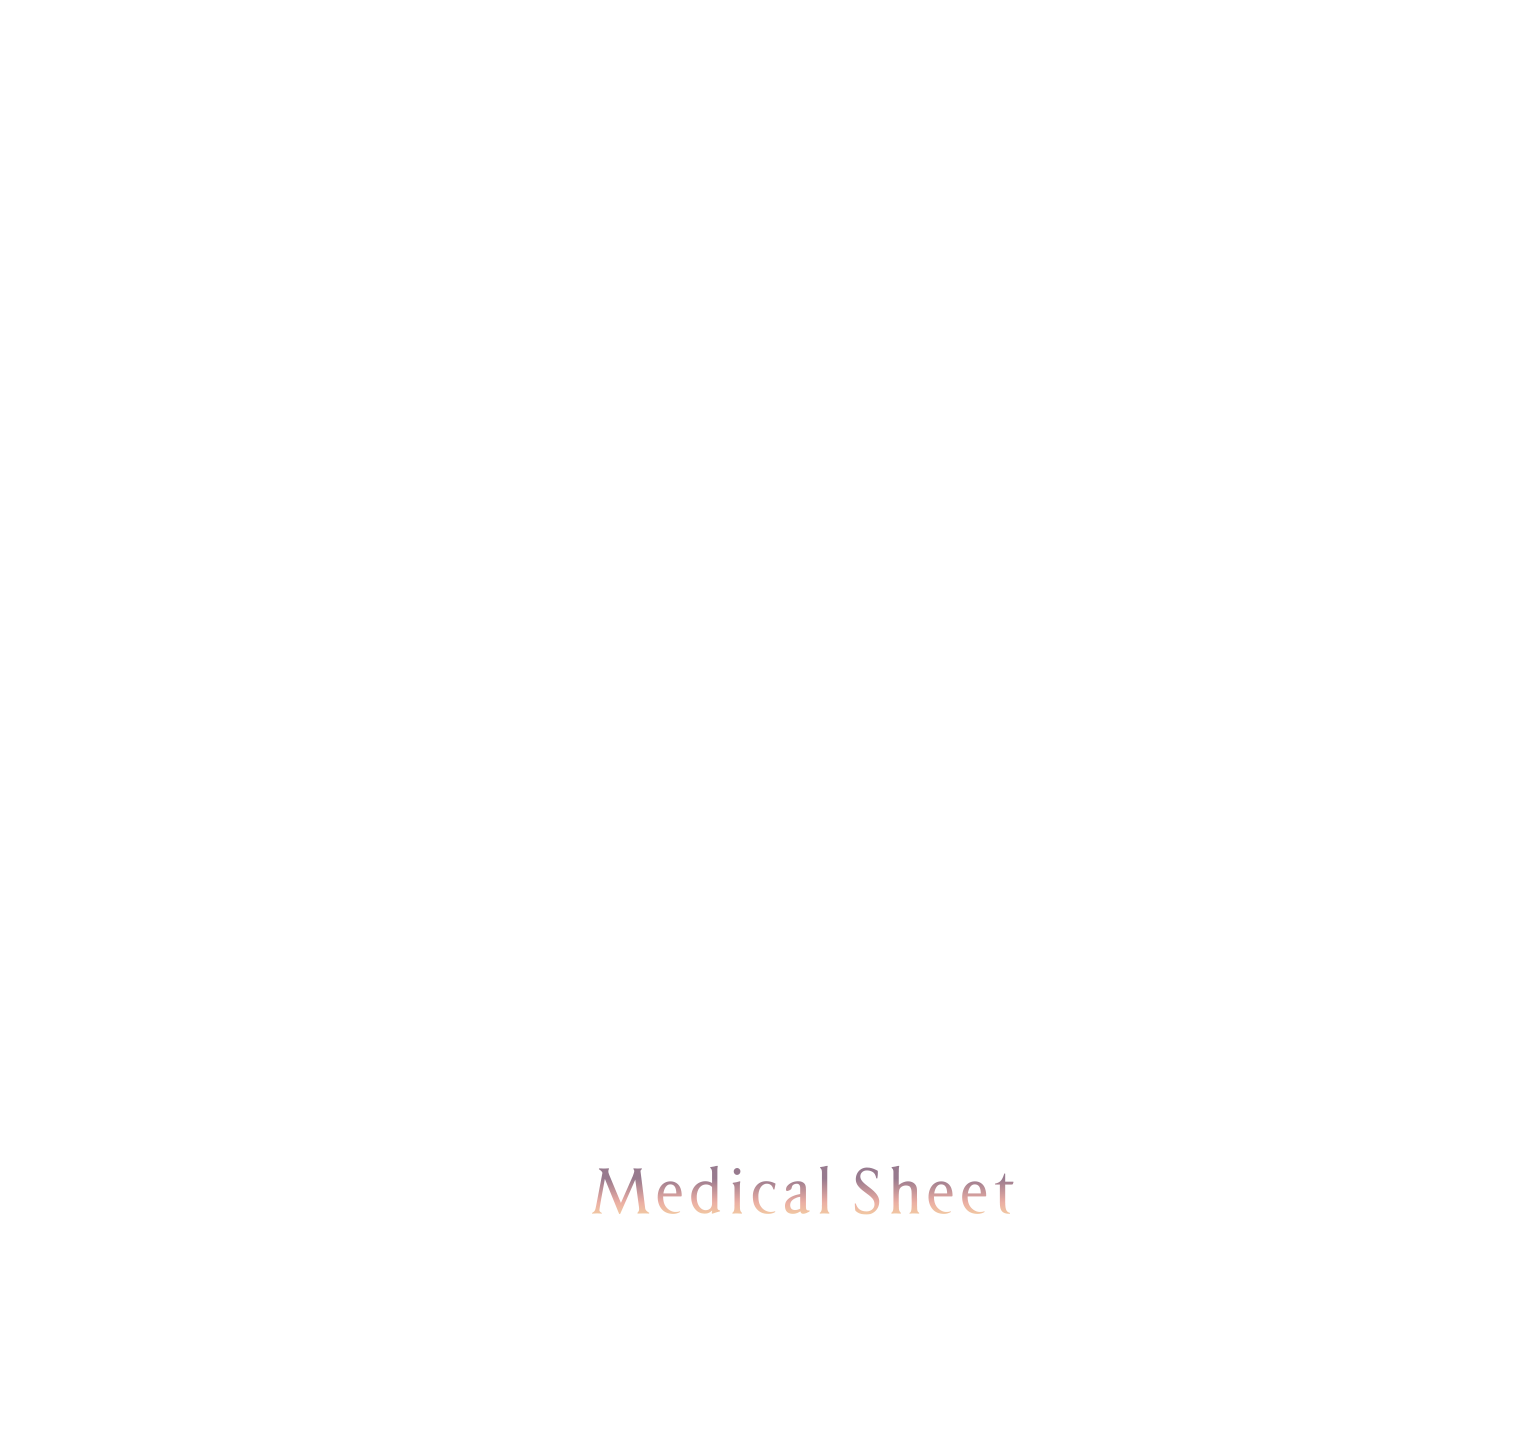 日本の、不眠に。1日約30円、月々1,000円※ではじめる不眠症対策 NEWPEACE Medical Sheet